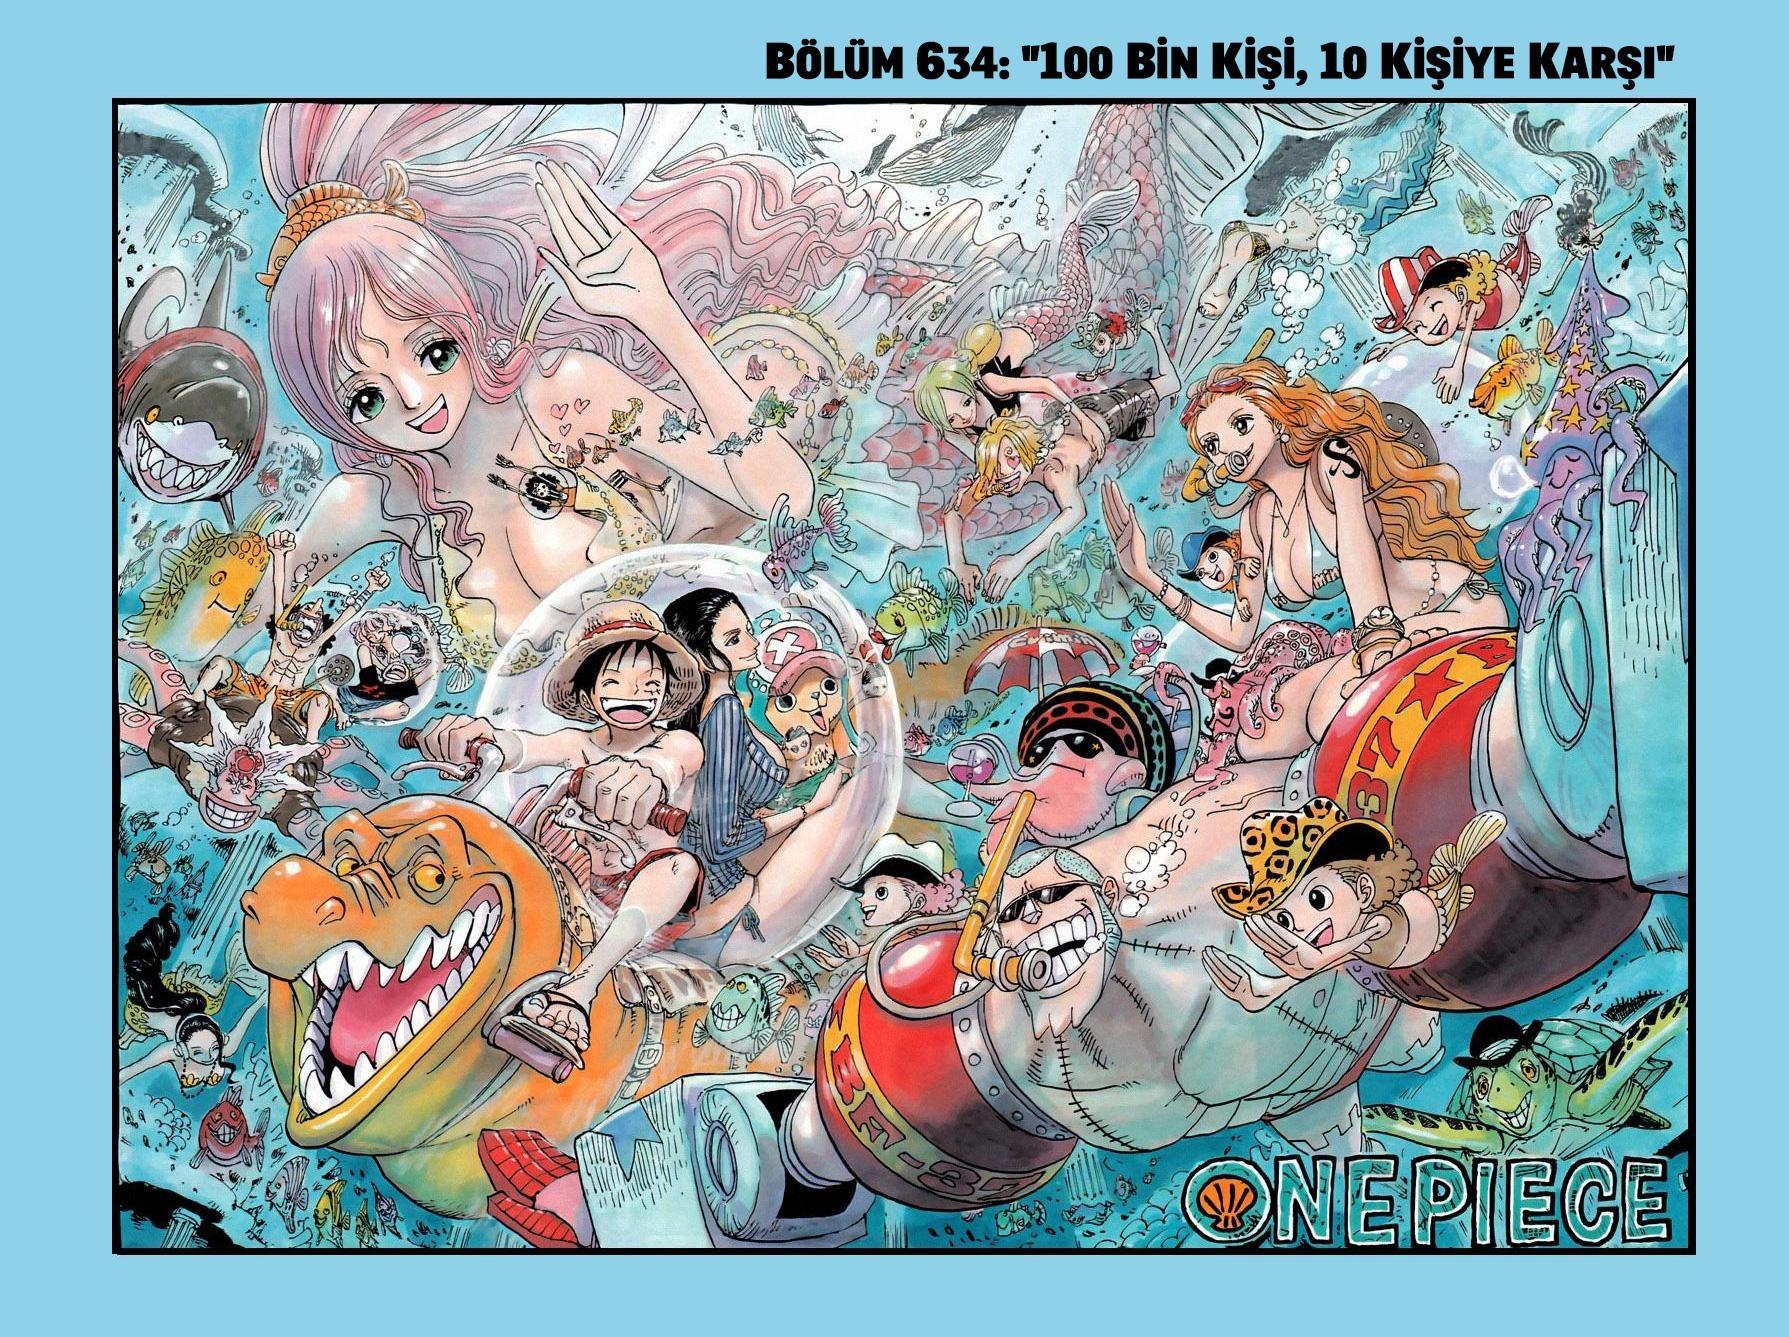 One Piece [Renkli] mangasının 0634 bölümünün 2. sayfasını okuyorsunuz.